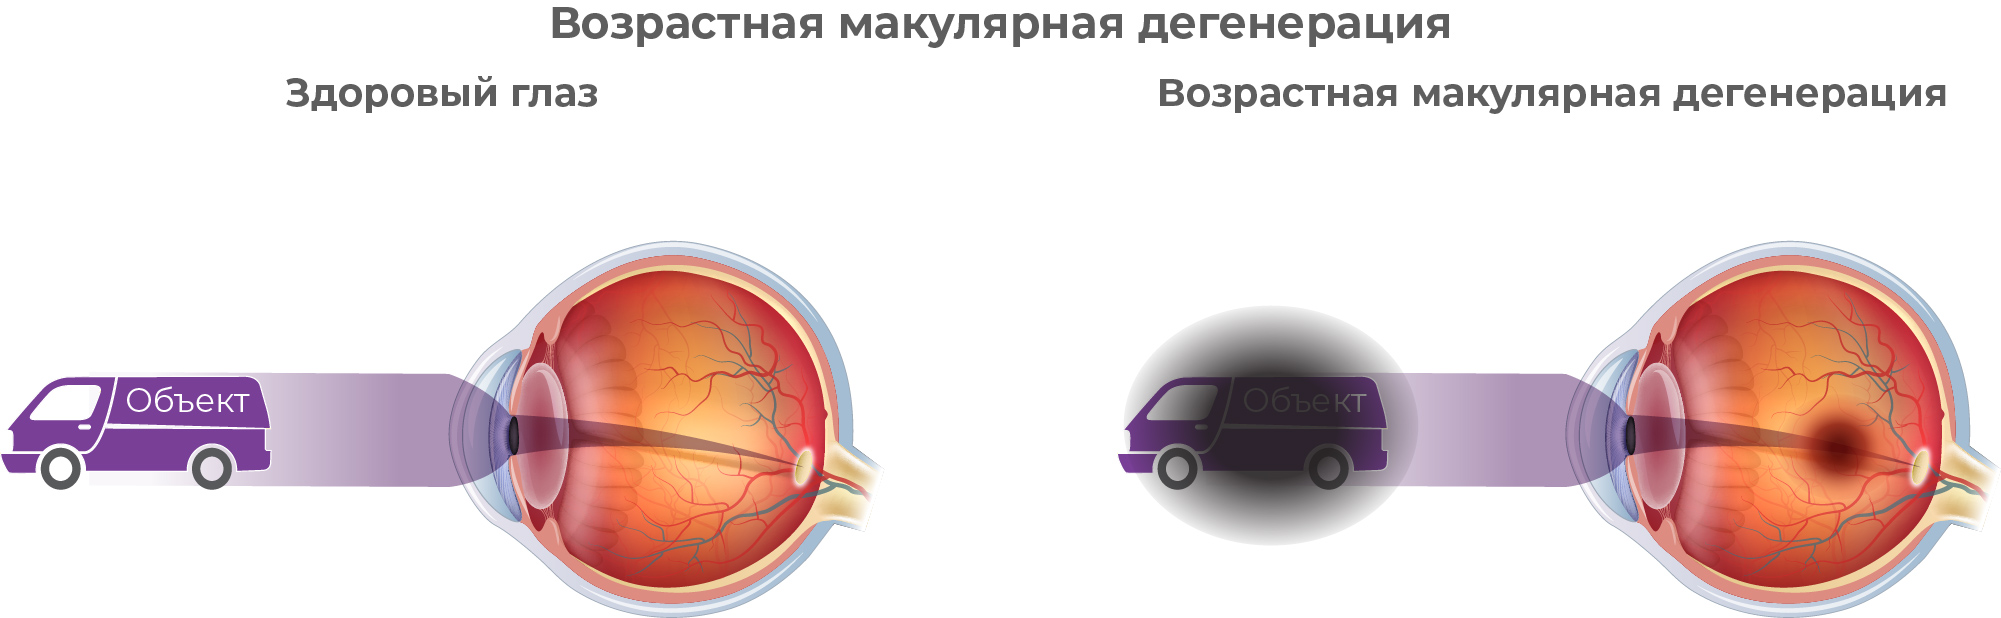 Схема здорового глаза и глаза с заболеванием